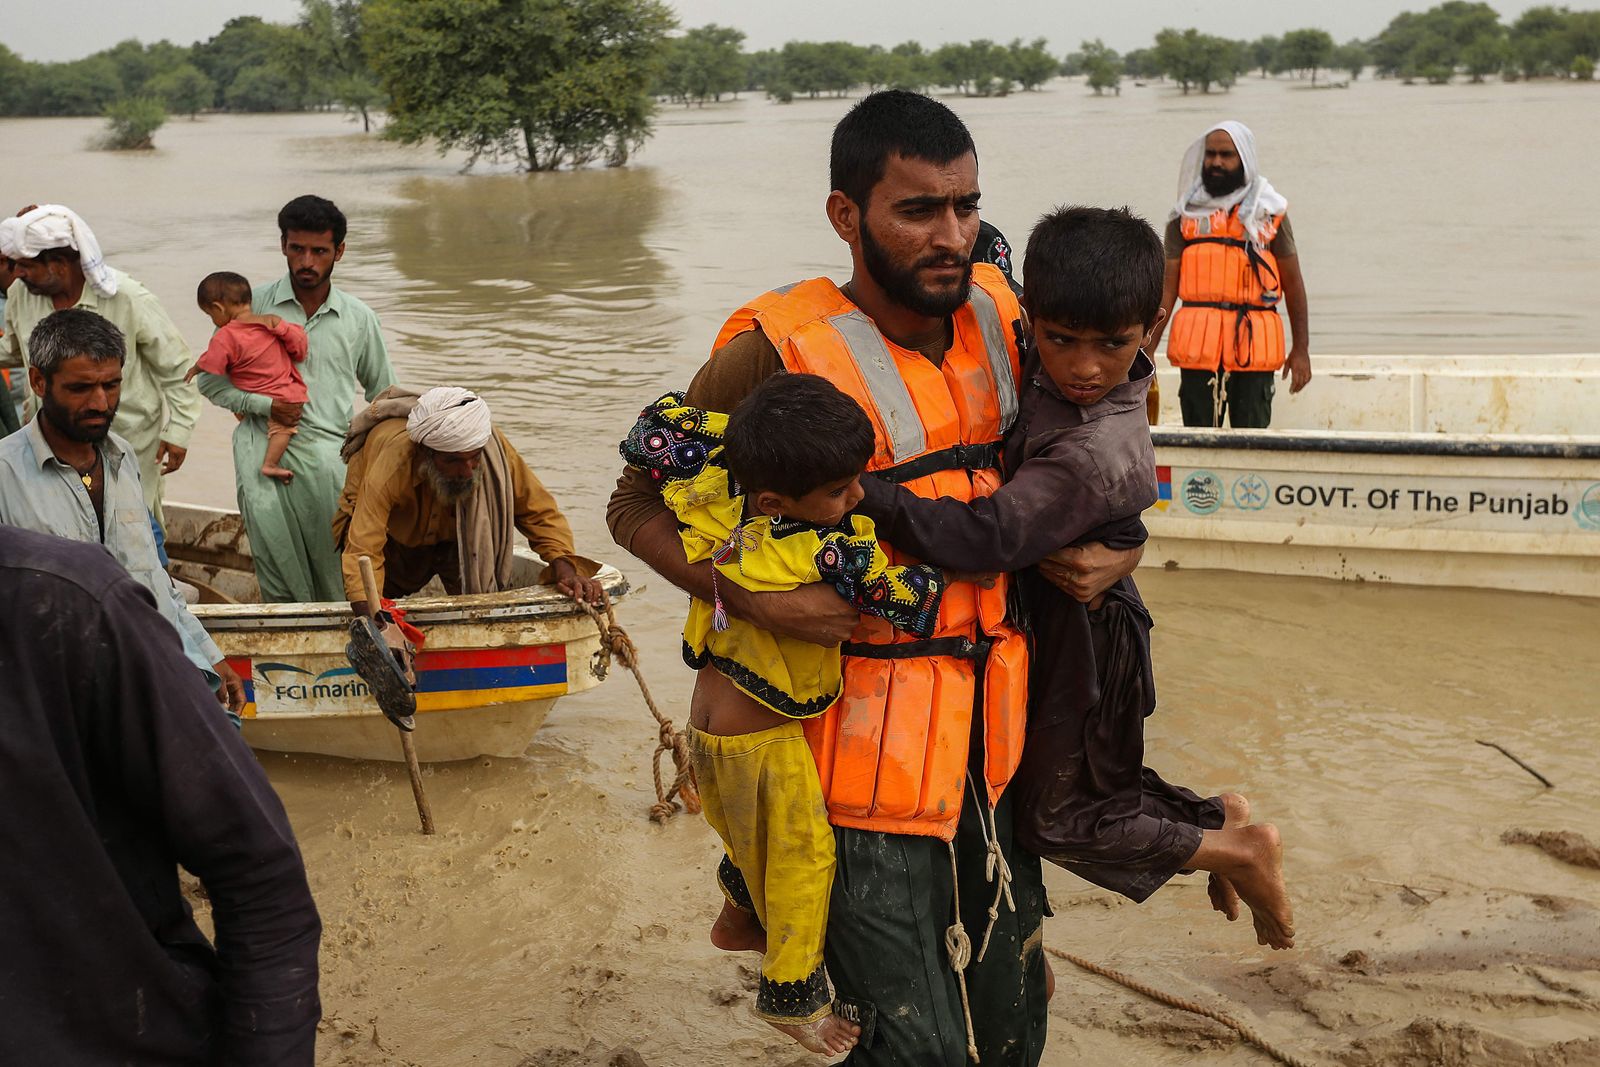 عمال إنقاذ يساعدون في إخلاء سكان من منازلهم المنازل المتضررة جراء الفيضانات بمقاطعة البنجاب- 27 أغسطس 2022 - AFP